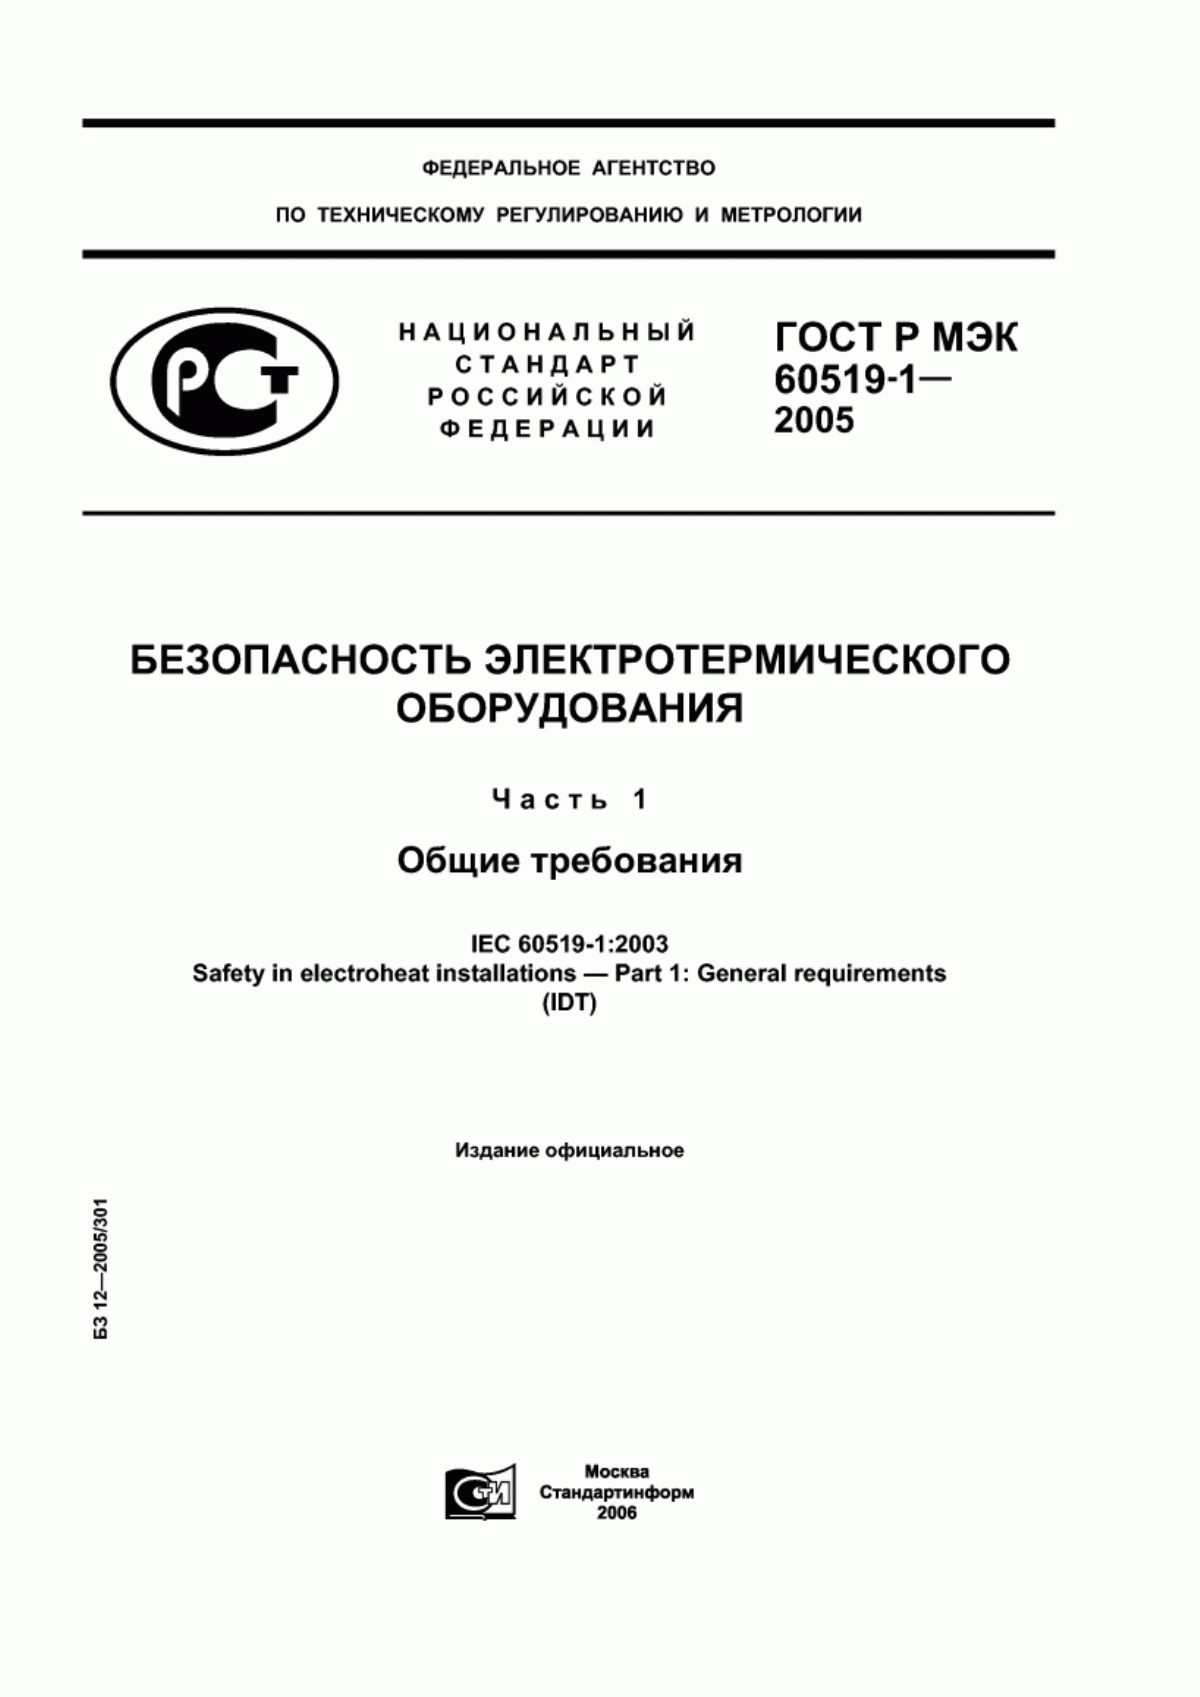 ГОСТ Р МЭК 60519-1-2005 Безопасность электротермического оборудования. Часть 1. Общие требования